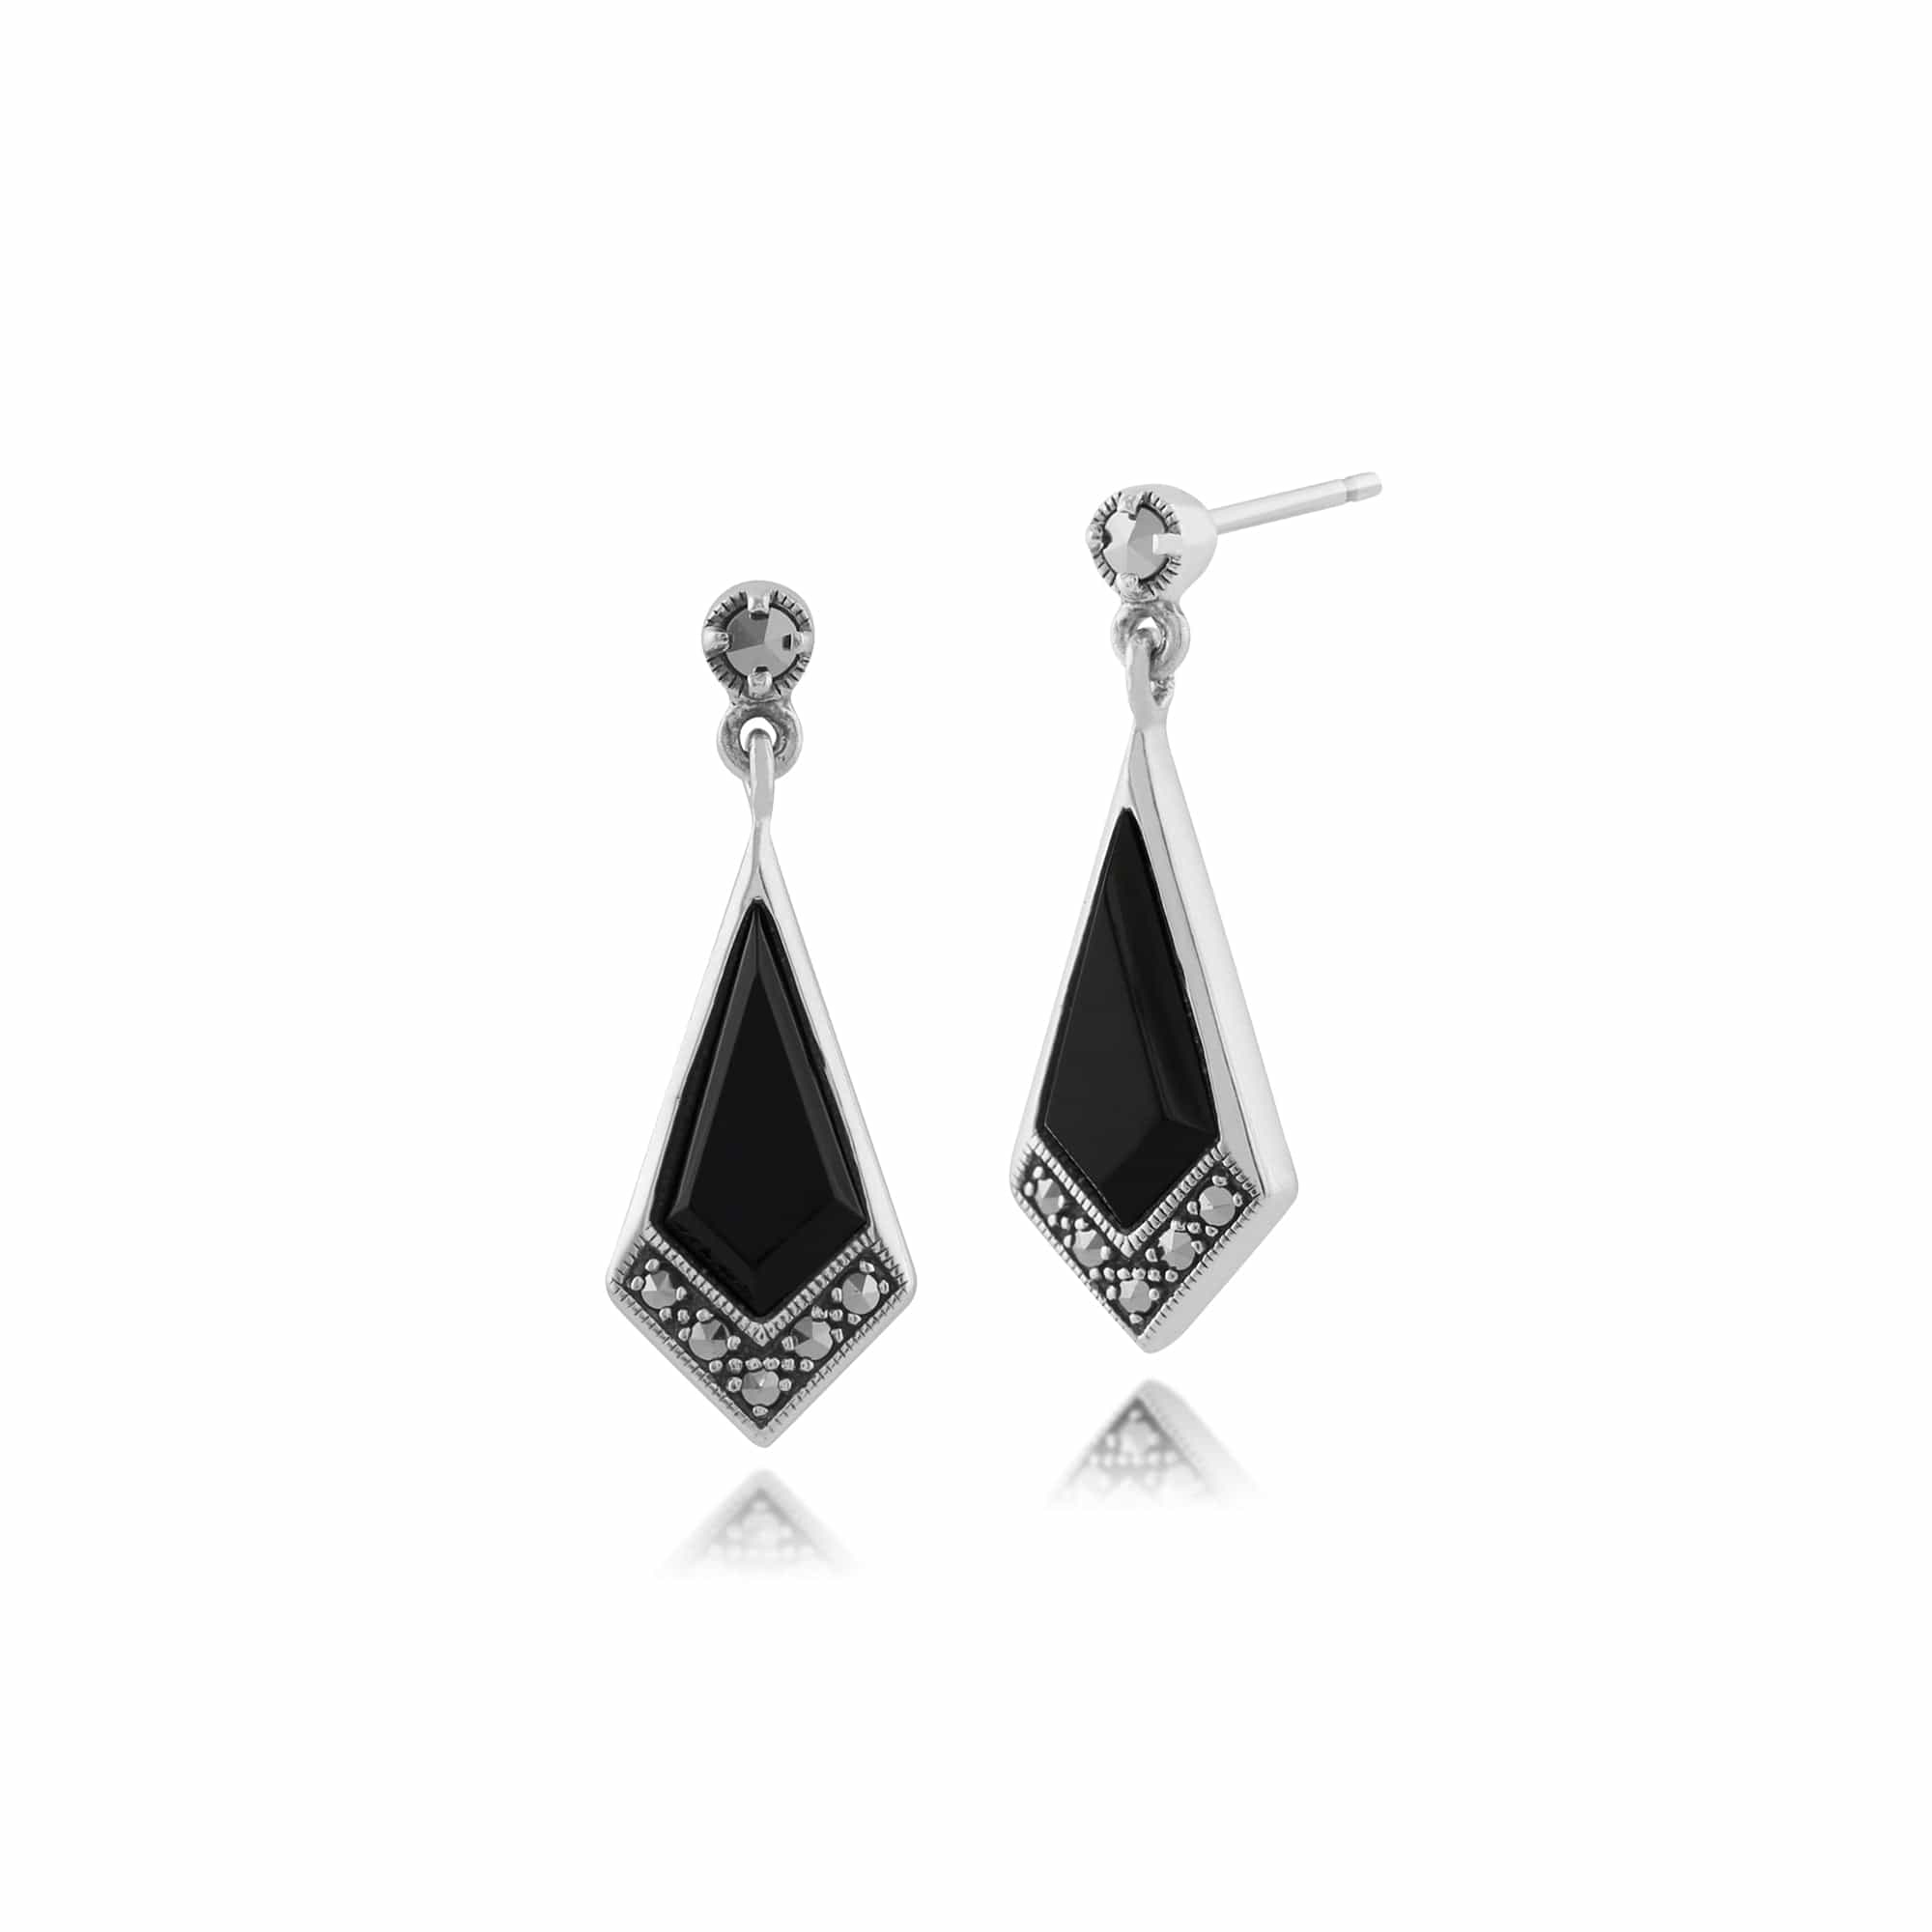 Art Deco Style Black Onyx & Marcasite Kite Drop Earrings in 925 Sterling Silver - Gemondo